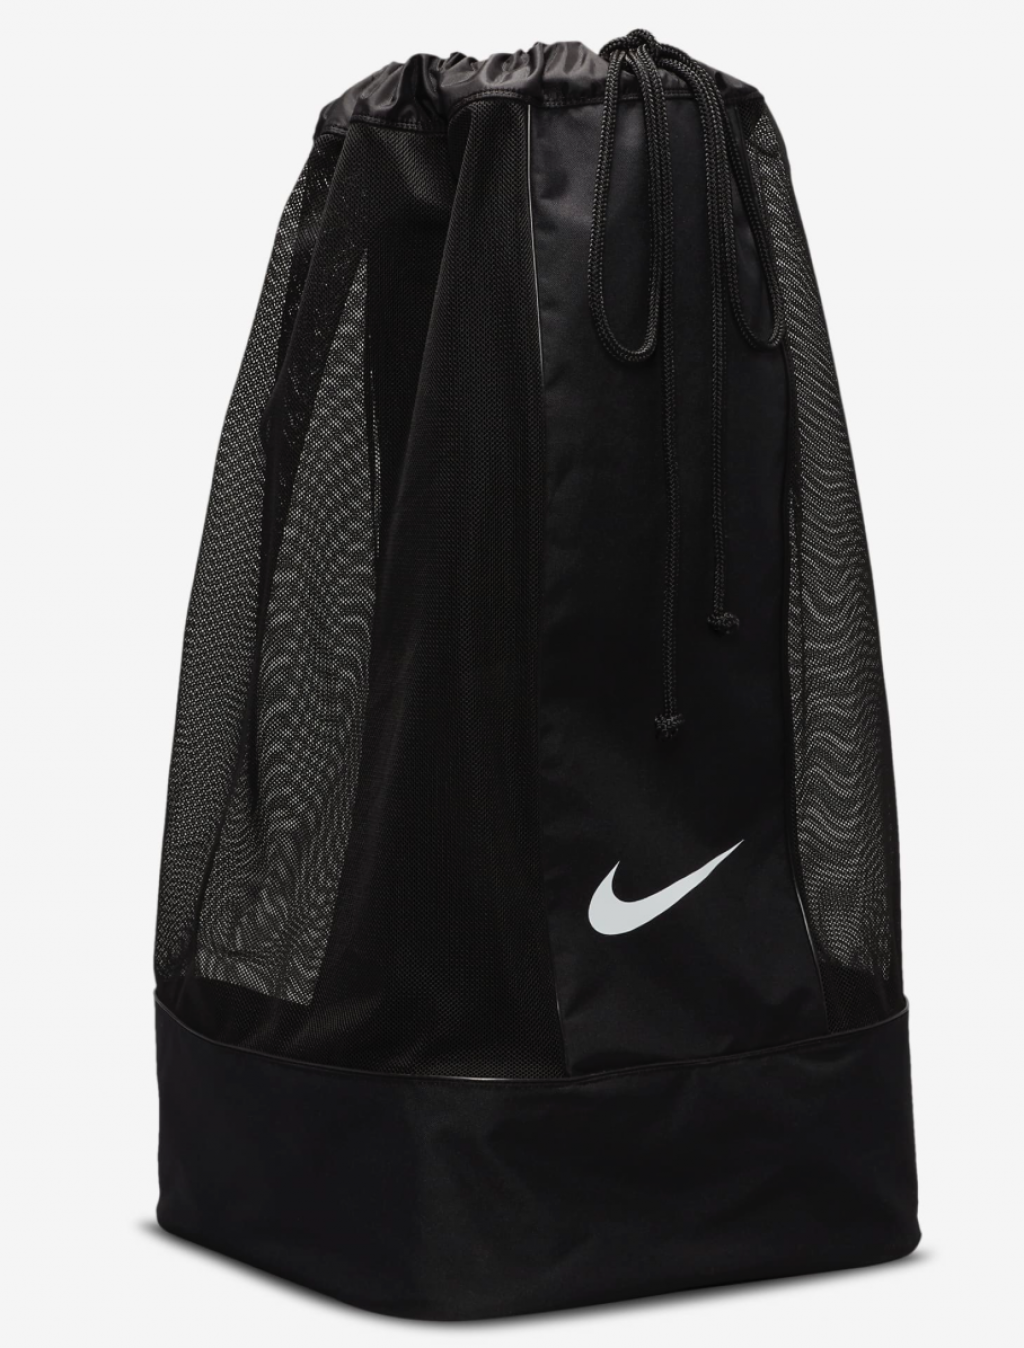 Сетка для мячей Nike Club team soccer bag